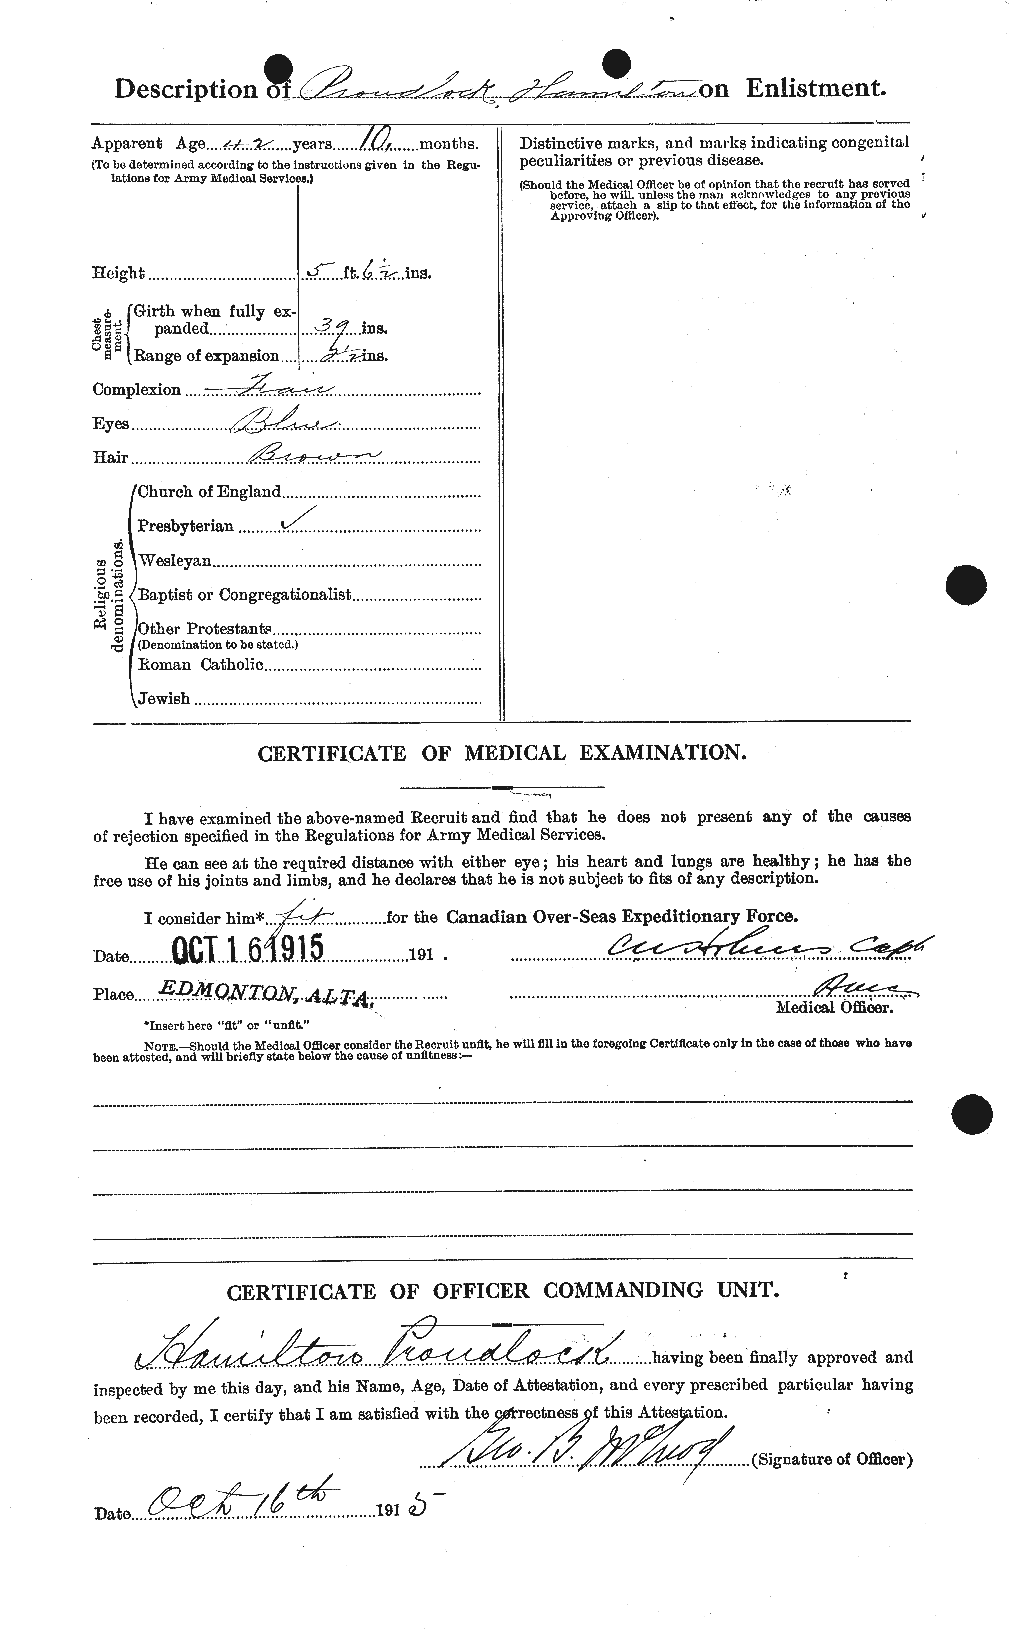 Dossiers du Personnel de la Première Guerre mondiale - CEC 591483b